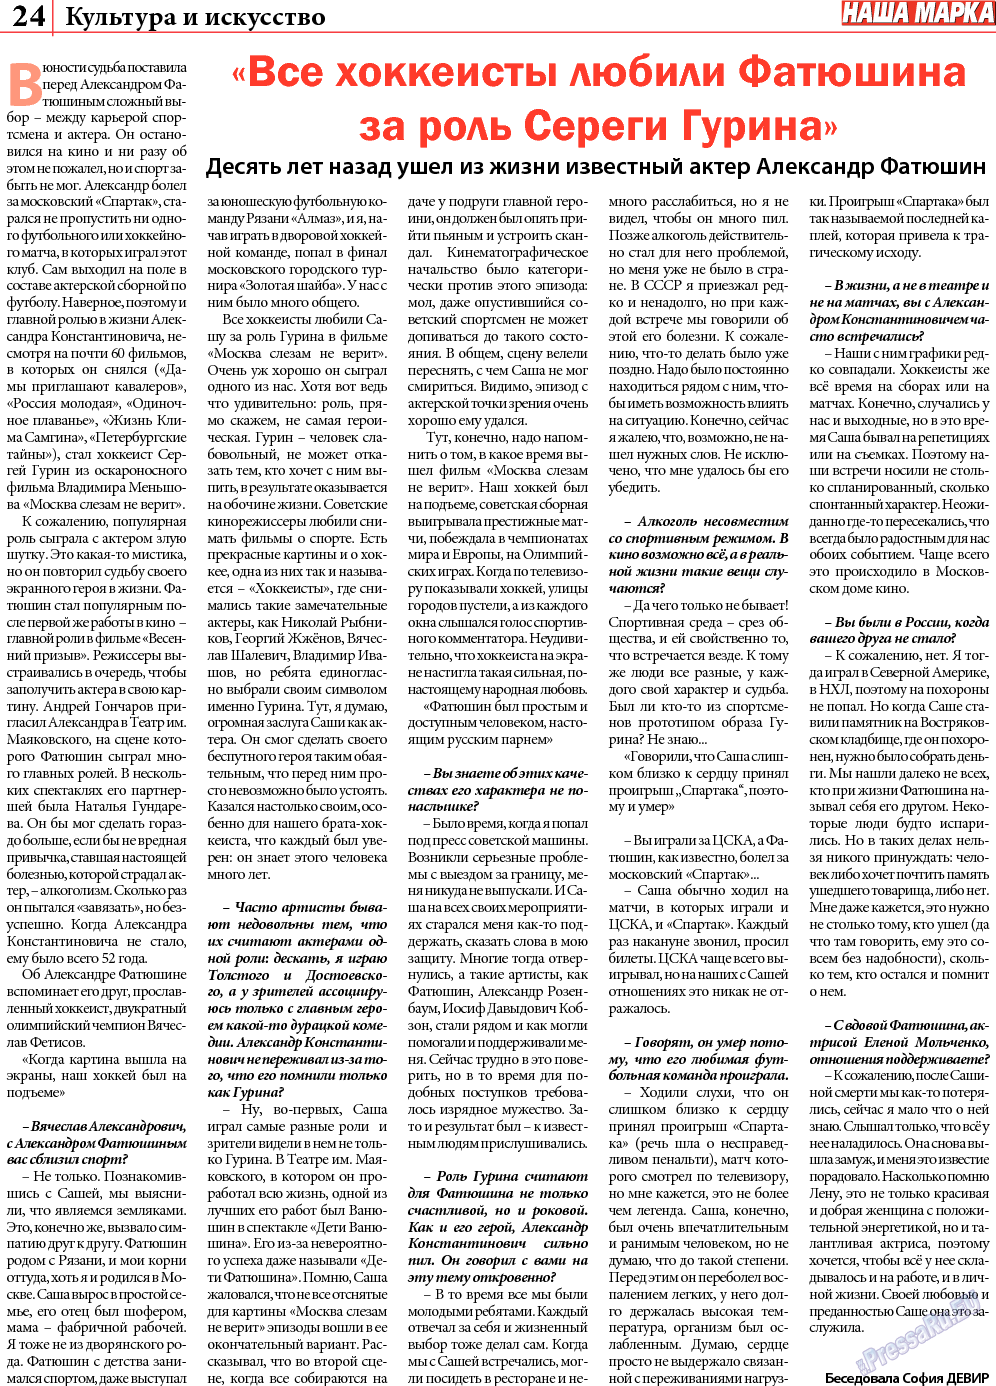 Наша марка (газета). 2013 год, номер 5, стр. 24